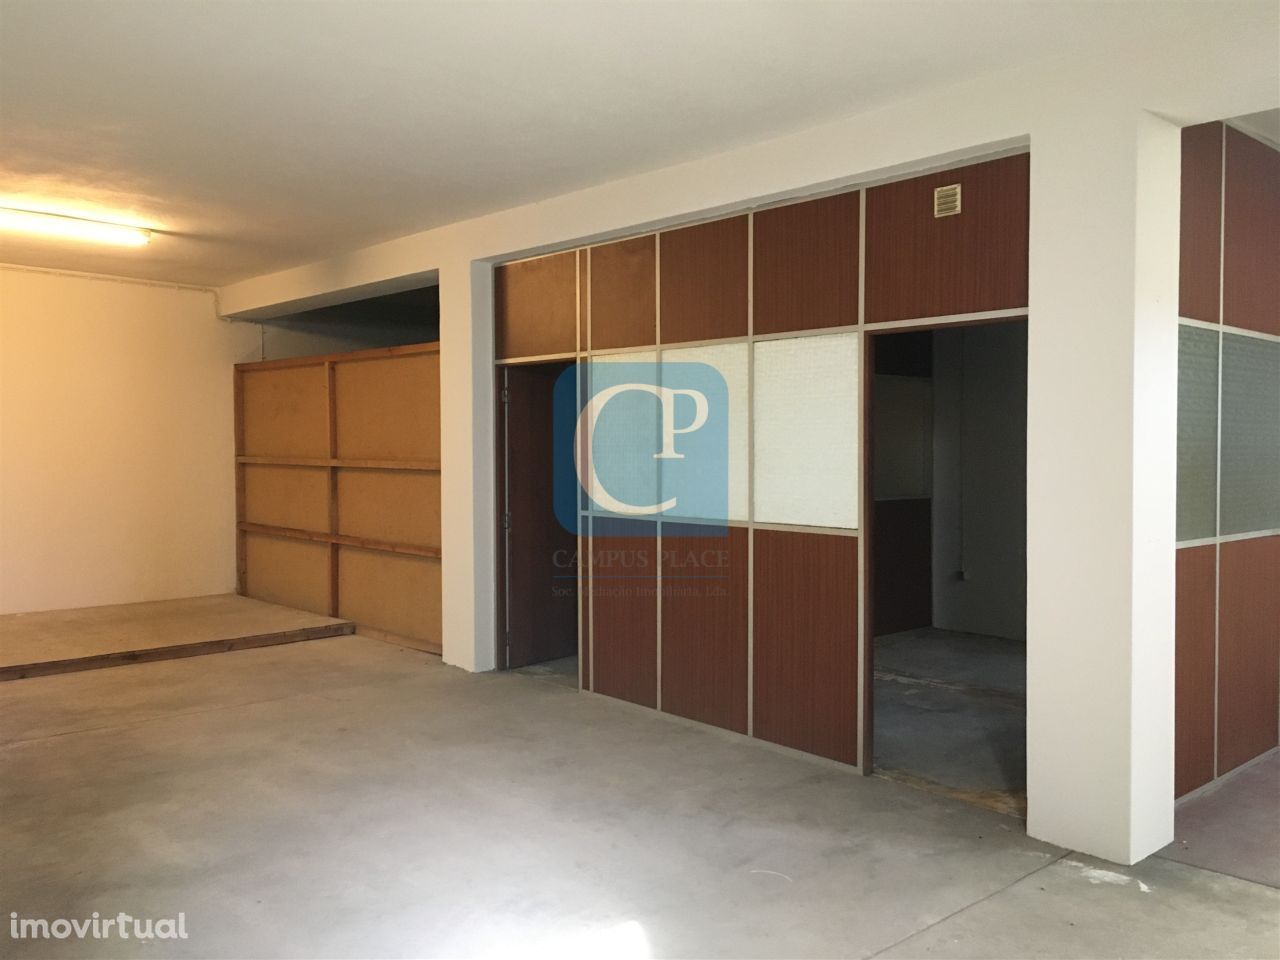 Estabelecimento com escritórios, armazém e aparcamento, à Areosa